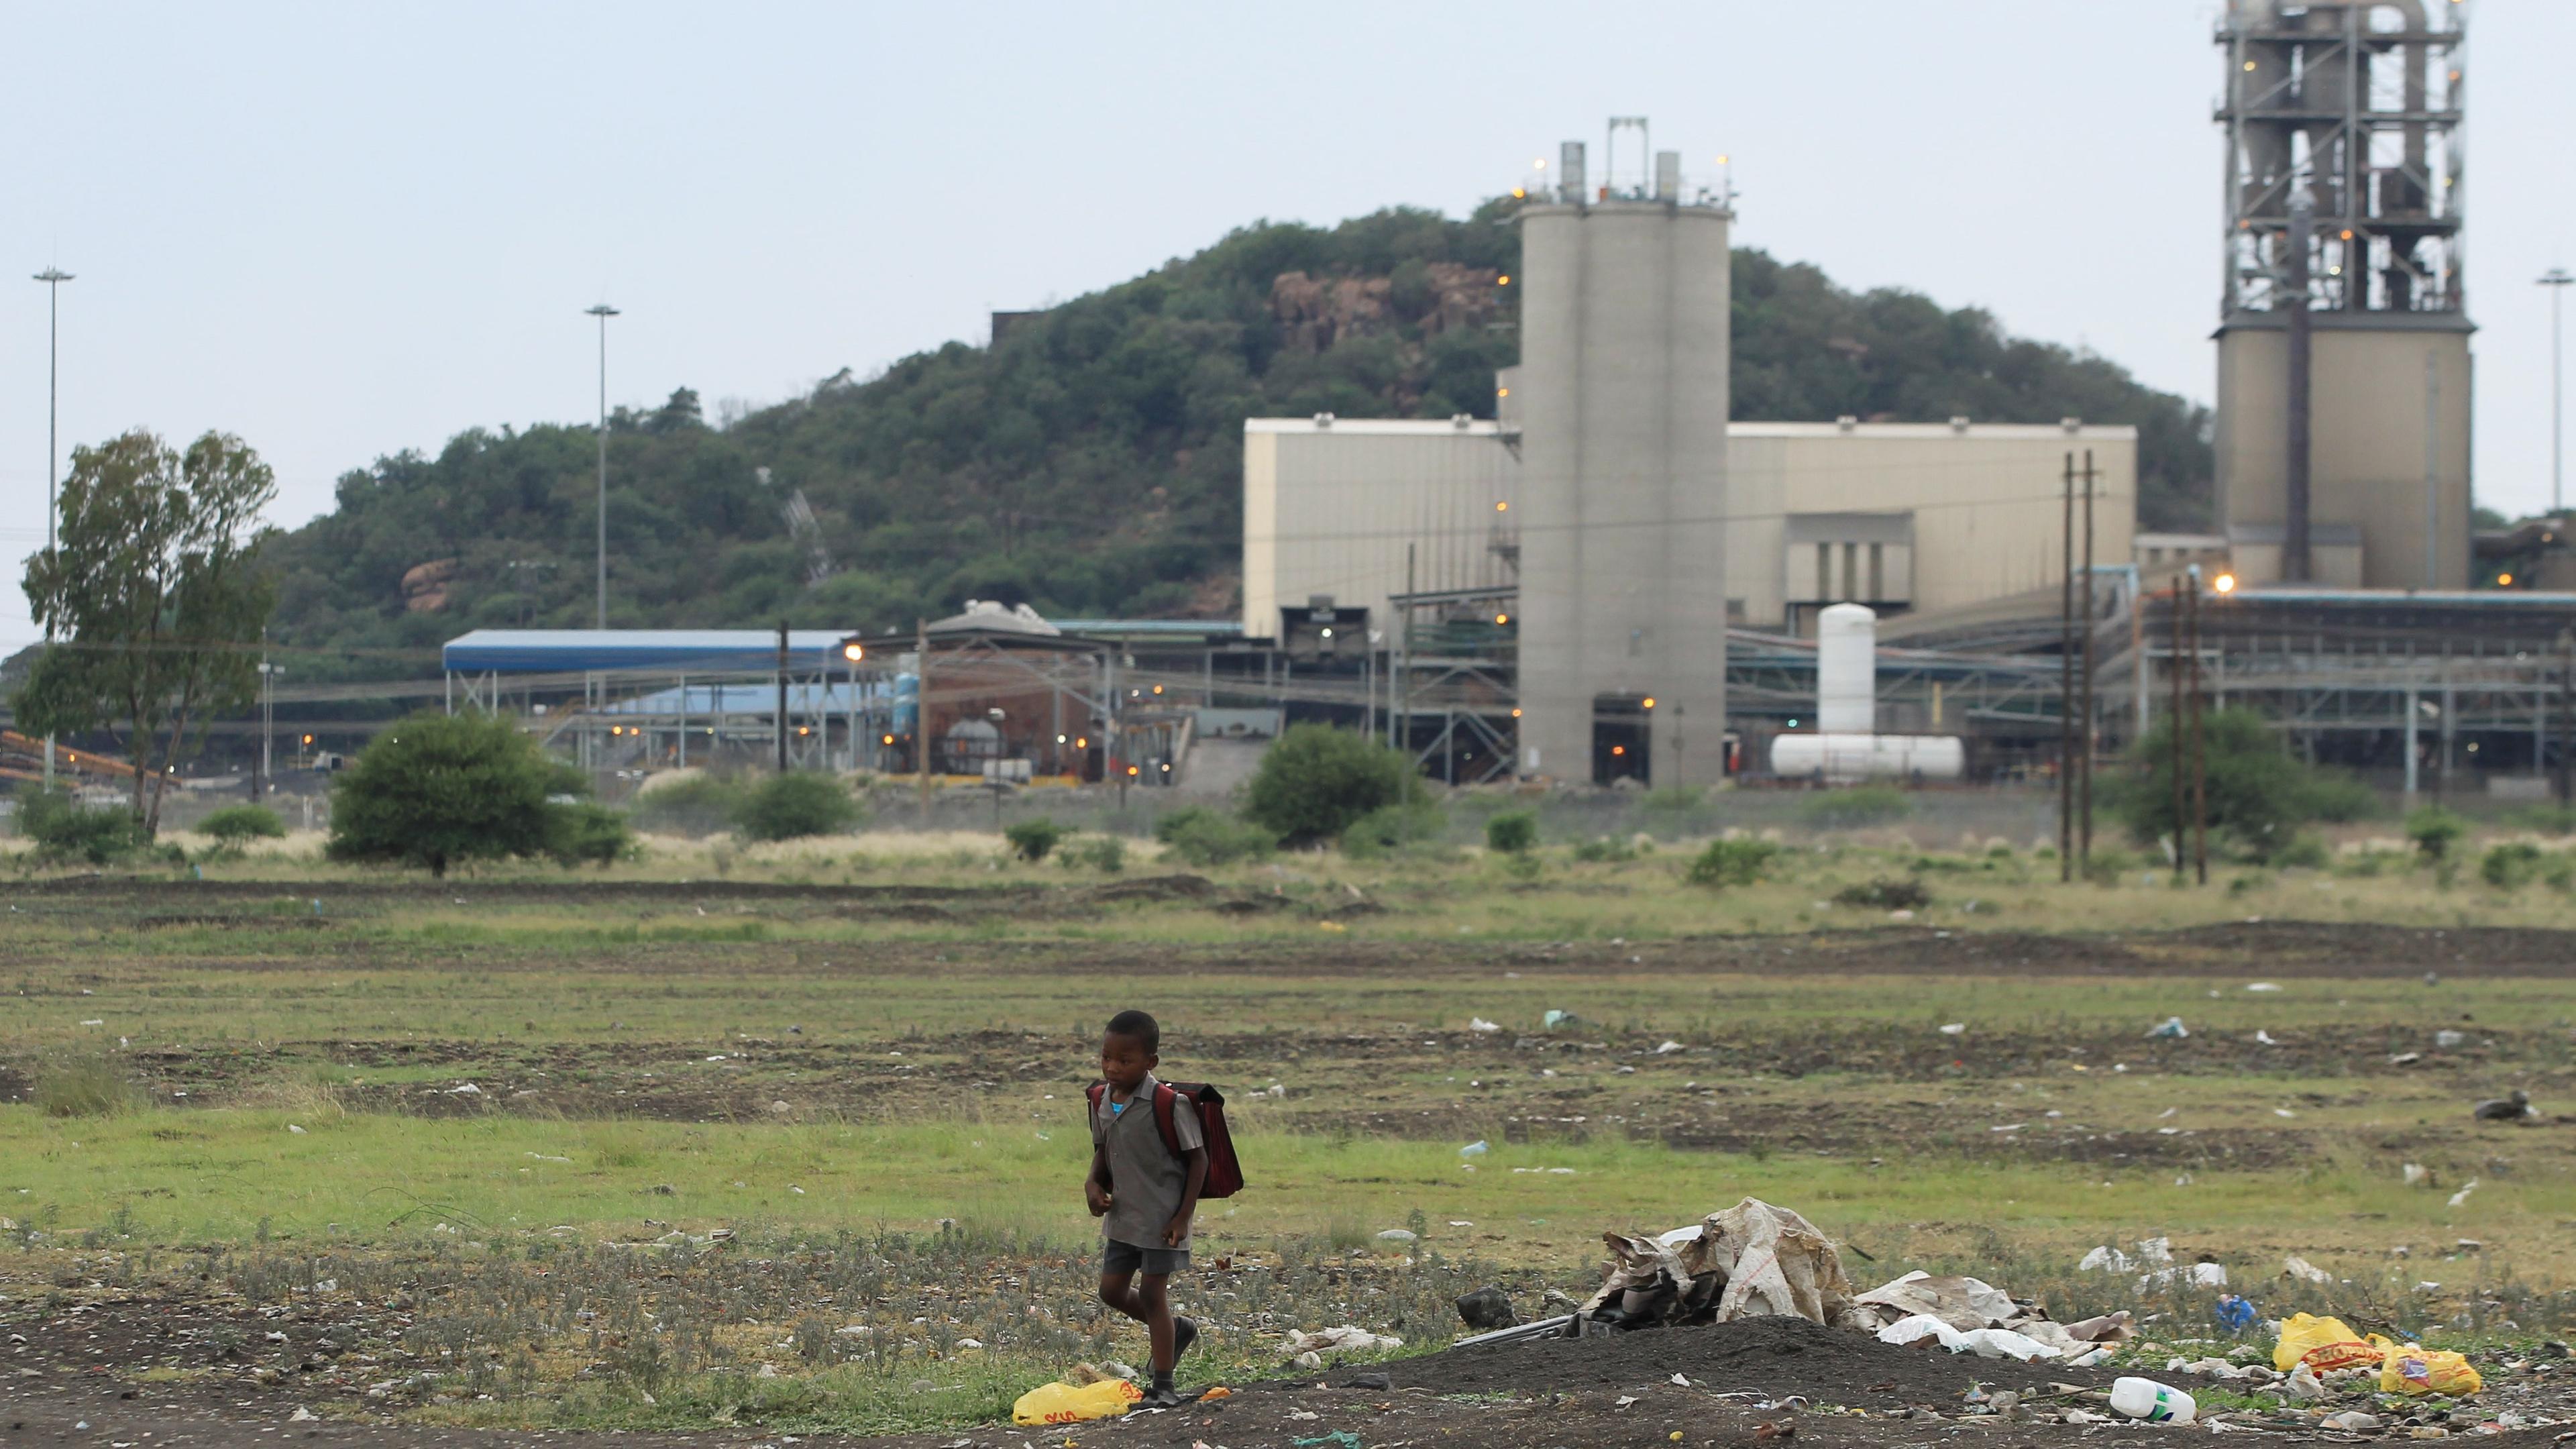 Gruvsektorn har stora lönsamhetsproblem i Sydafrika. Tusentals jobb är i fara. Arkivbild. Foto: Themba Hadebe AP/TT